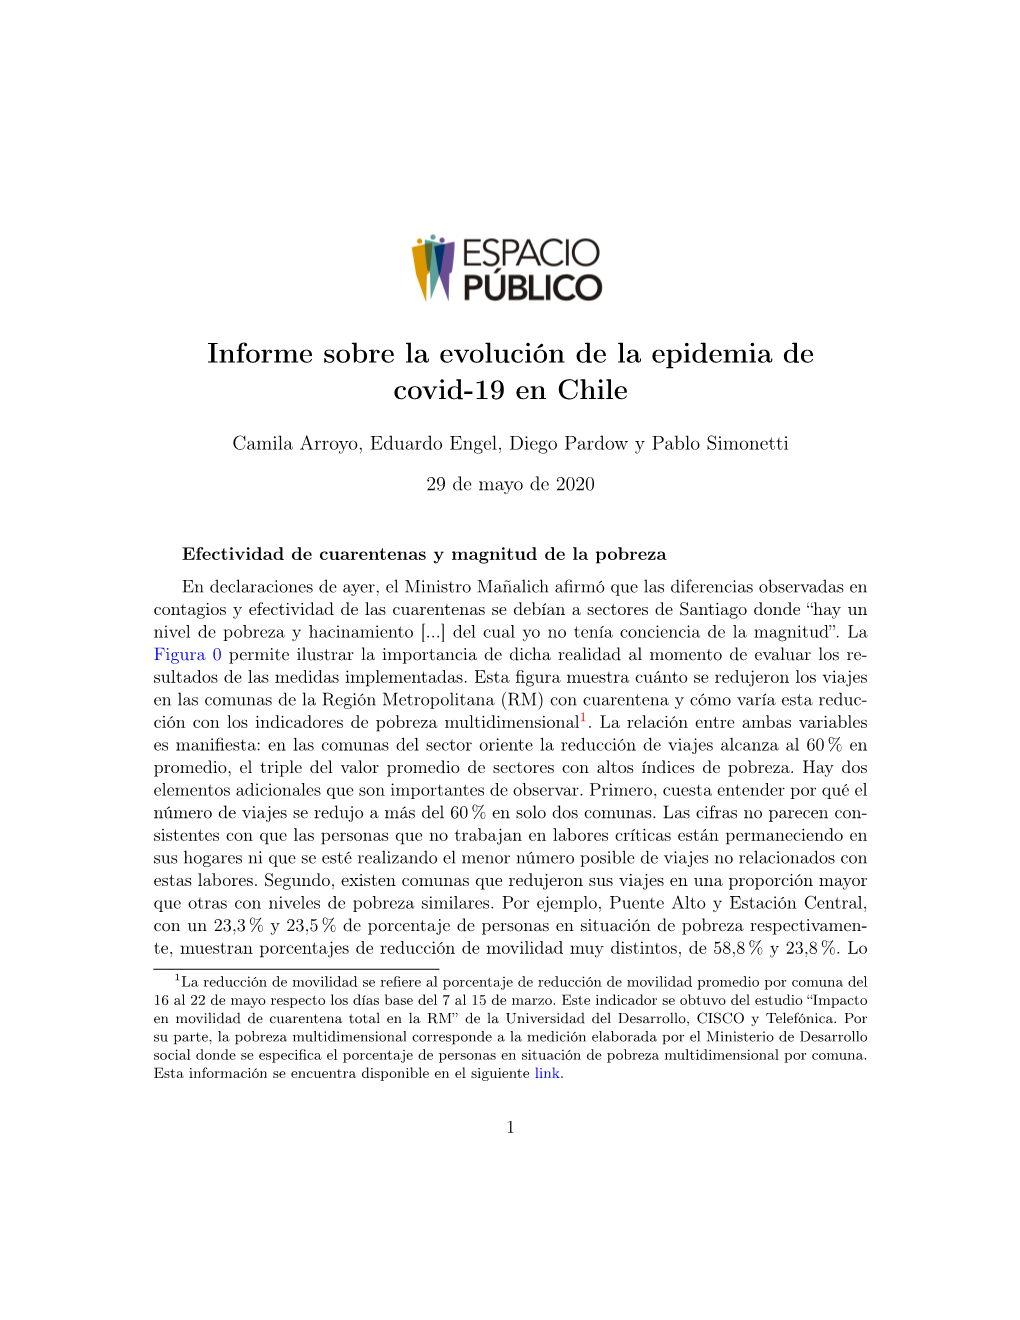 Informe Sobre La Evolución De La Epidemia De Covid-19 En Chile